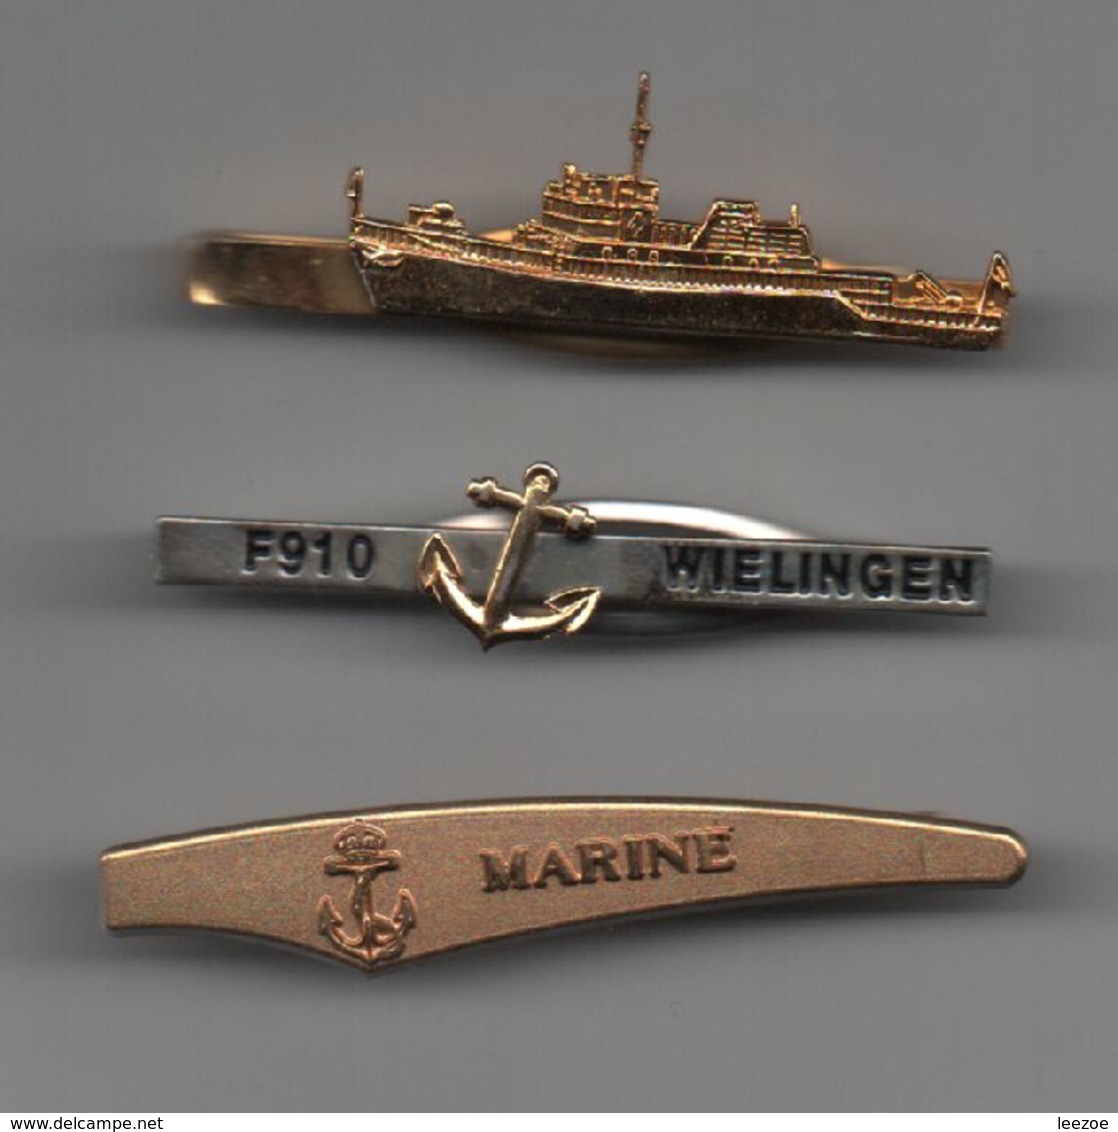 Pinces à Cravatte Marine F910 WIELINGEN, Bateaux, Navires....BT15 - Boutons